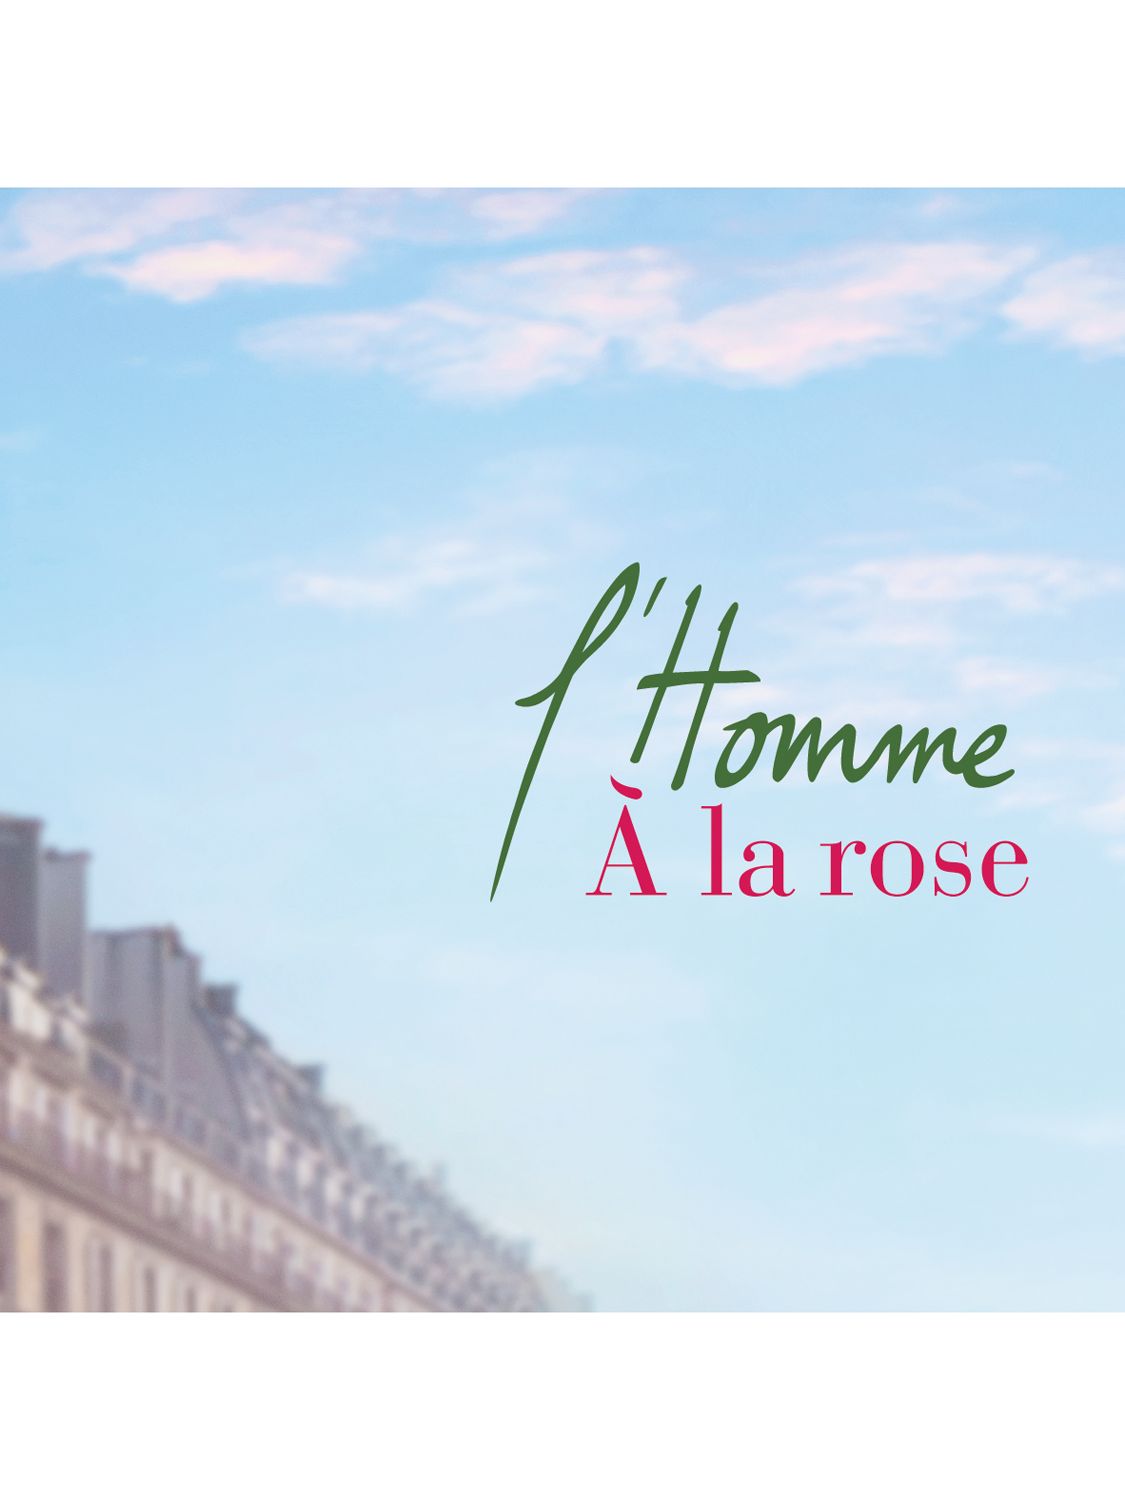 Maison Francis Kurkdjian L'Homme A la Rose Eau de Parfum, 70ml